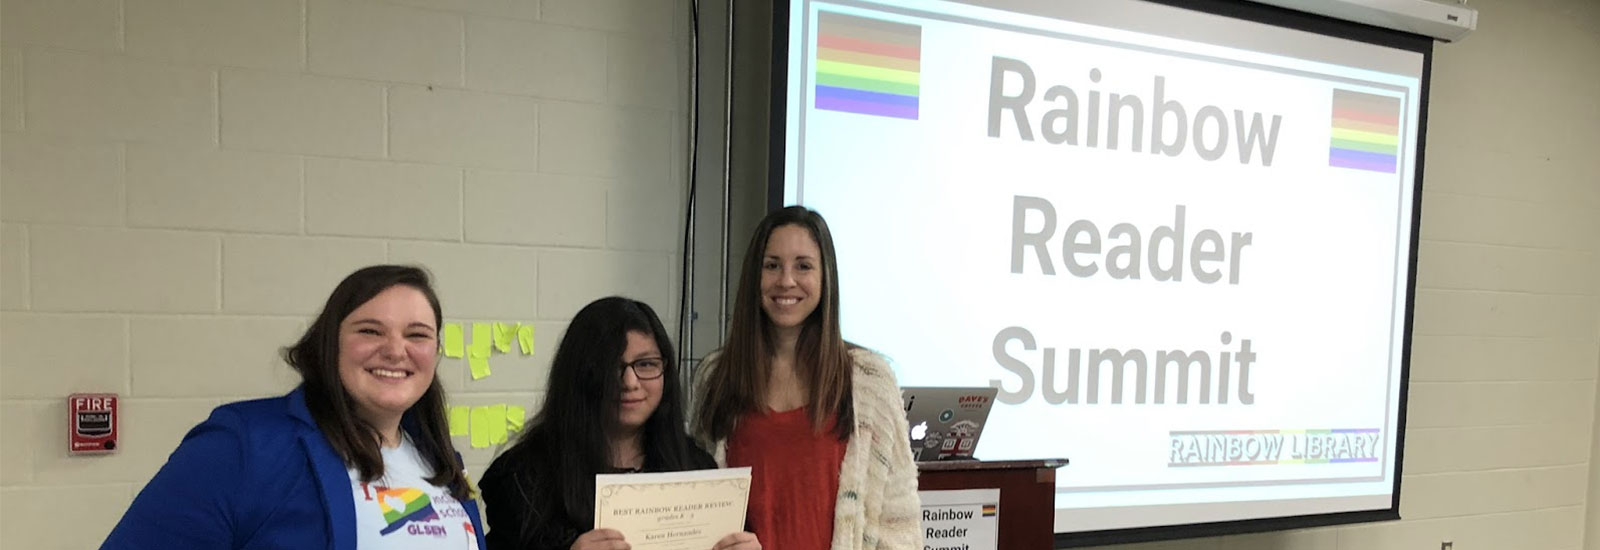 Rainbow Reader Summit